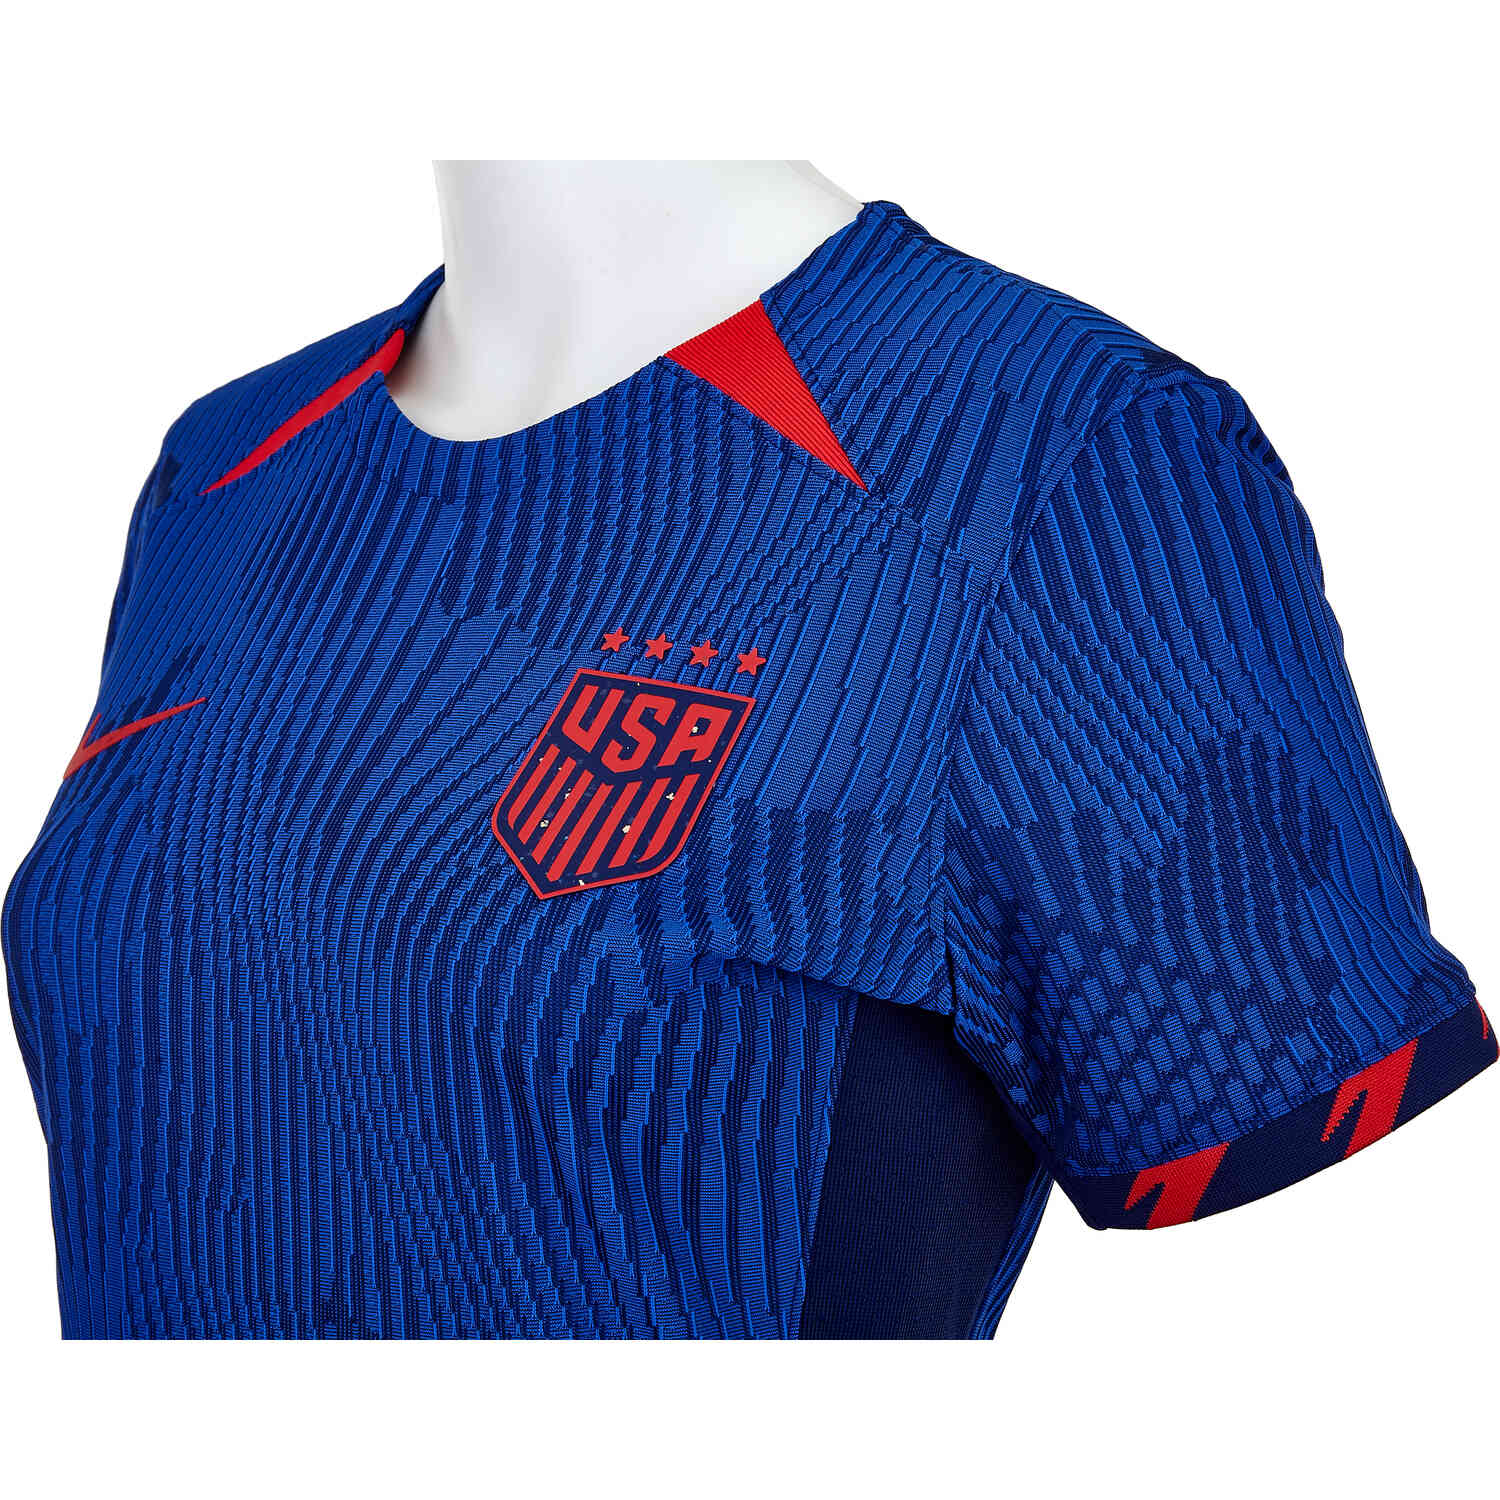 2023 Womens Nike 4-Star USA Away Match Jersey - SoccerPro